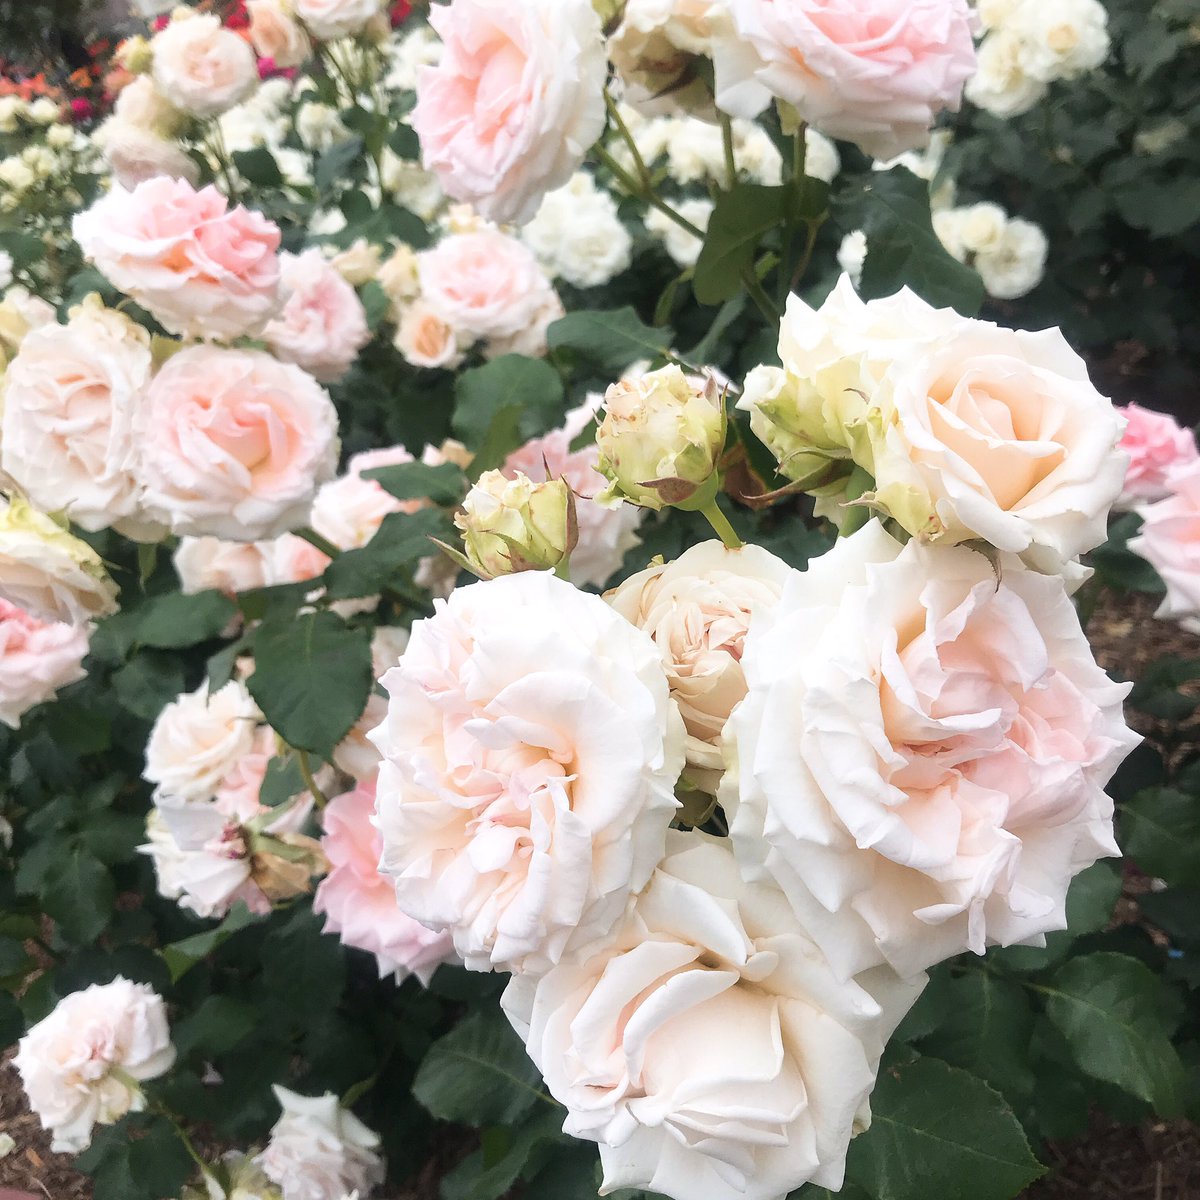 あぼ 今日は薔薇園のイベントでマリみて併せ 白薔薇姉妹やってきたよ 小鞠さんの聖さまと めちゃくちゃエモい写真撮ってもらった Pありがとう